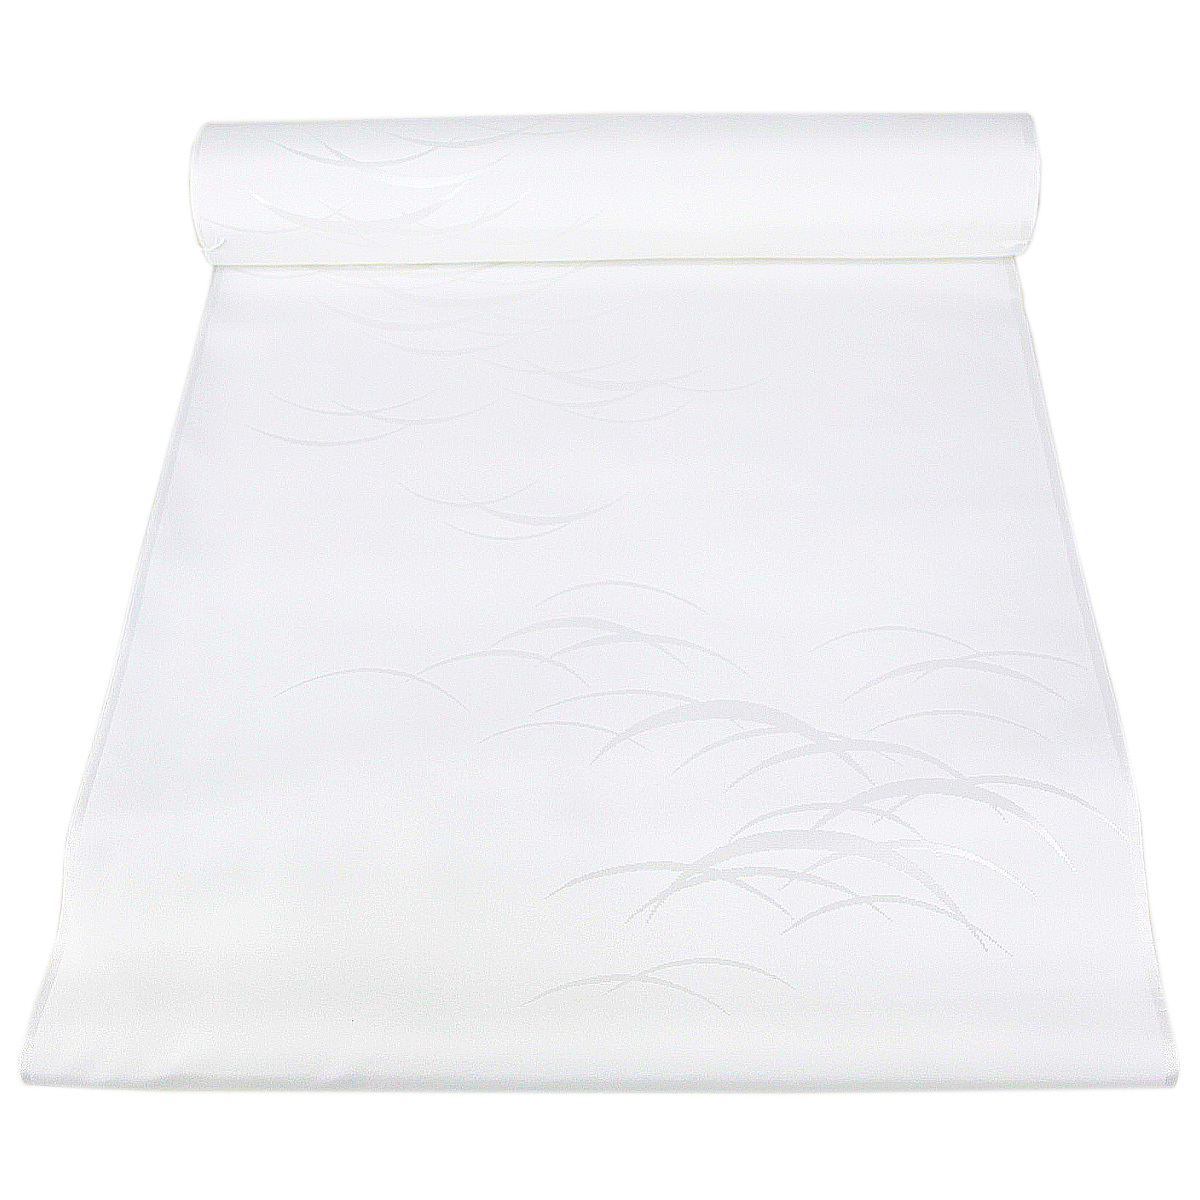 長襦袢 反物 -21- 広幅/40cm巾 白 礼装用 紋綸子 ポリエステル100% 日本製